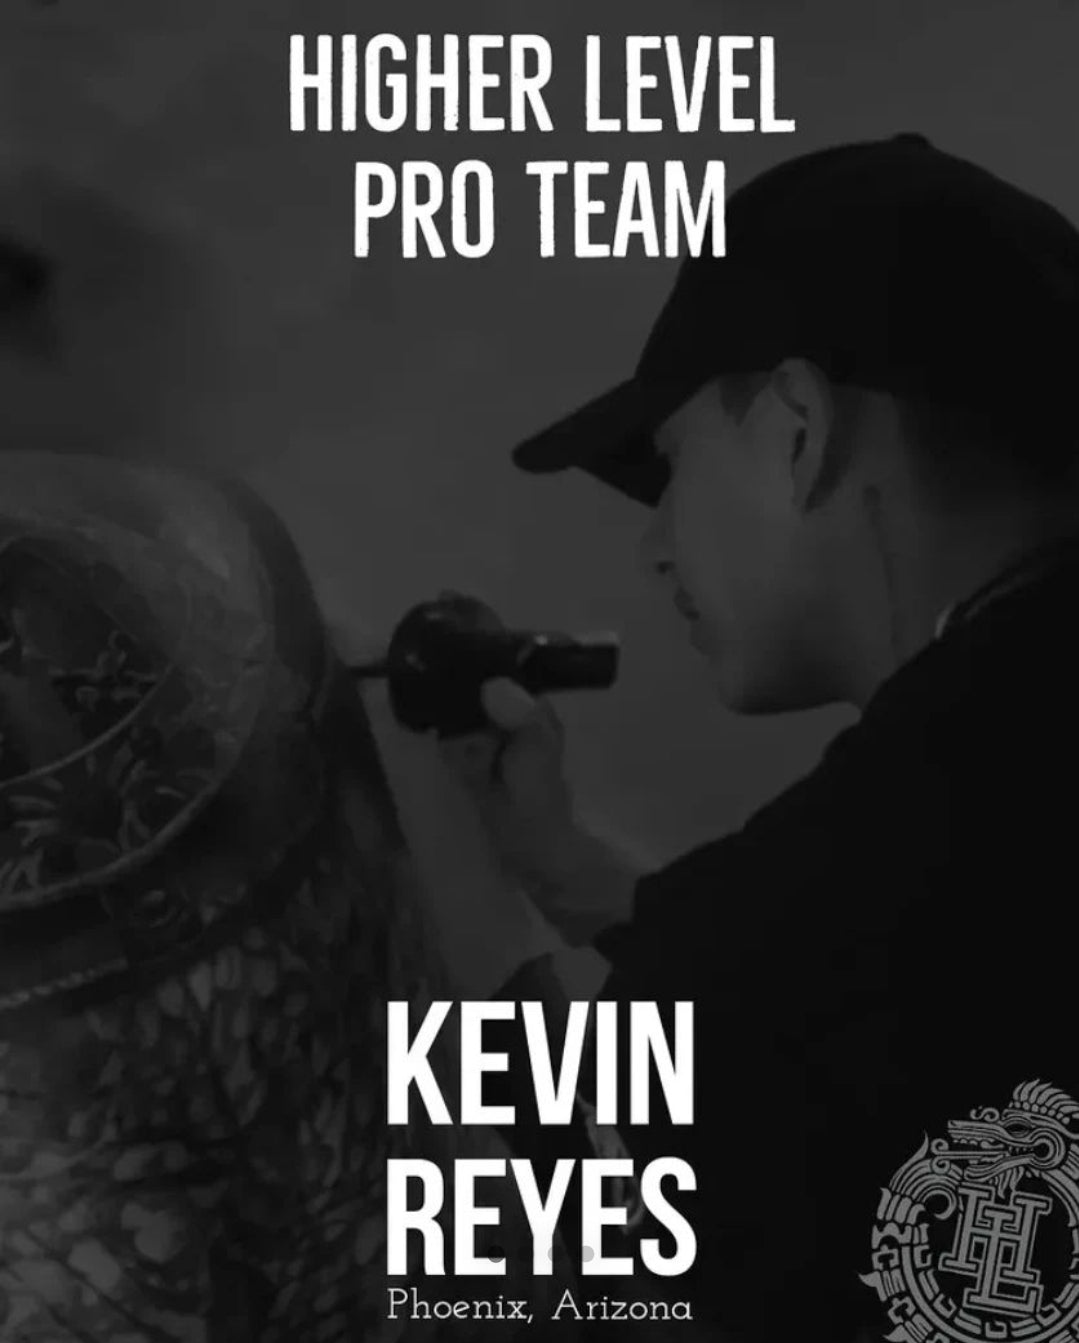 Kevin "Mr. Reyes" Reyes